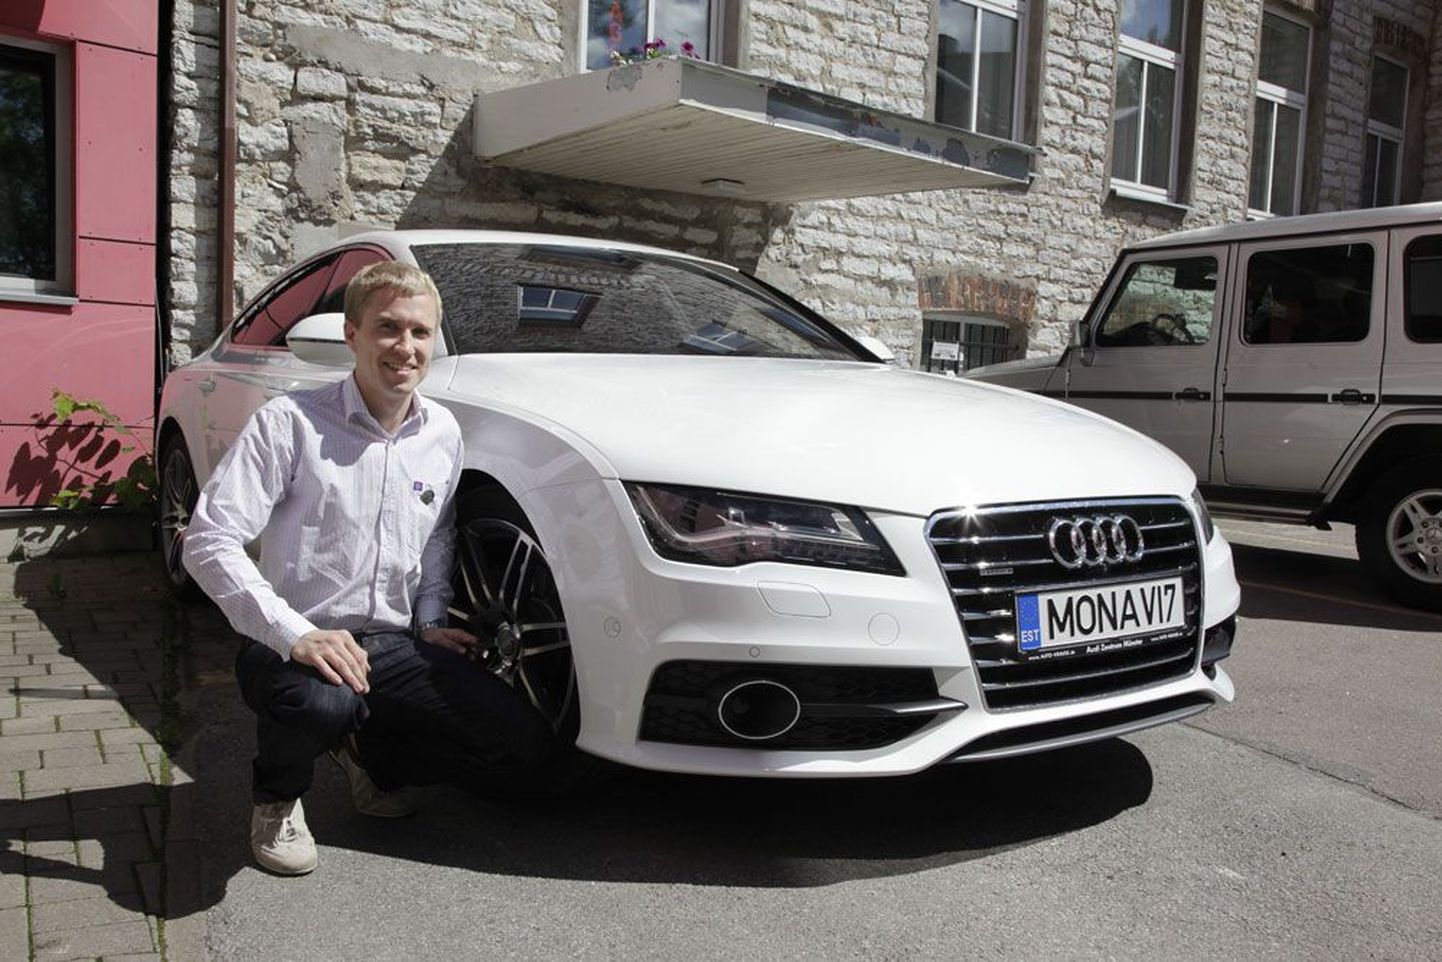 Самый успешный продавец соков предприятия Mona Vie в Эстонии Вейко Круустюк получил на свое 30-летие новенький белоснежный автомобиль Audi A7, который фирма взяла для него в лизинг.